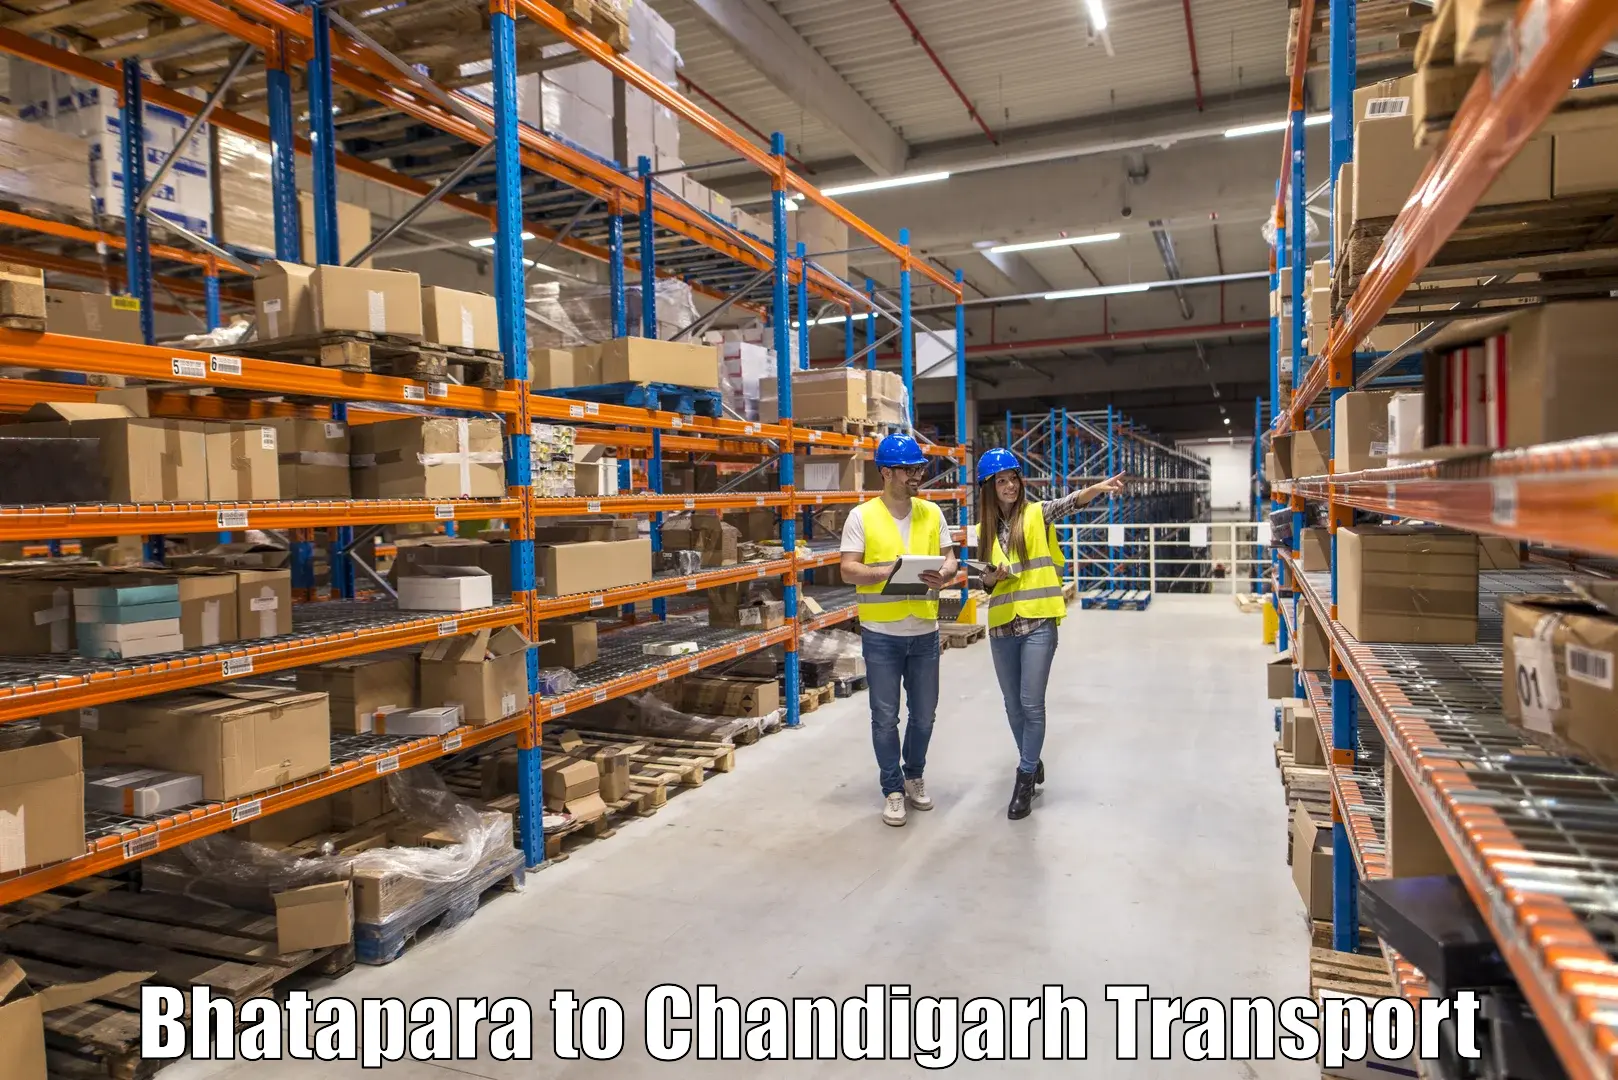 Vehicle transport services Bhatapara to Chandigarh